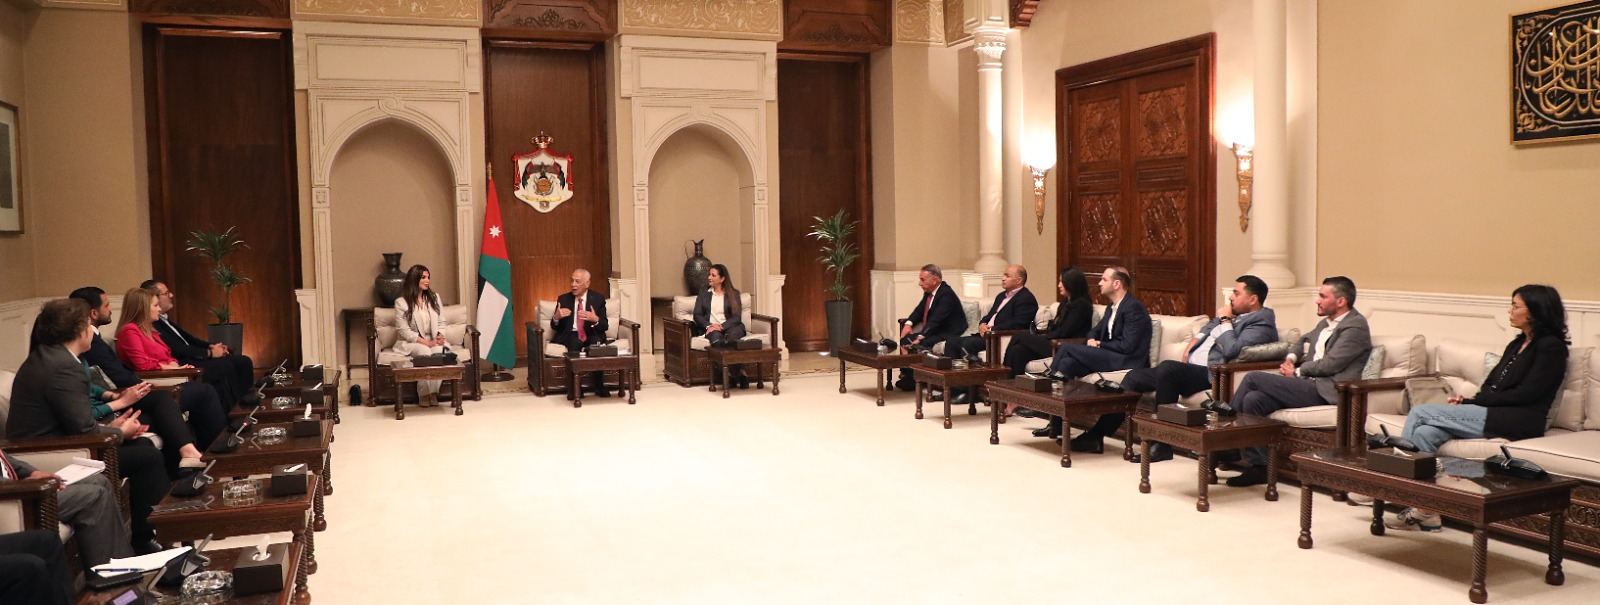 رئيس الديوان الملكي الهاشمي يلتقي إعلاميين ونشطاء تواصل اجتماعي